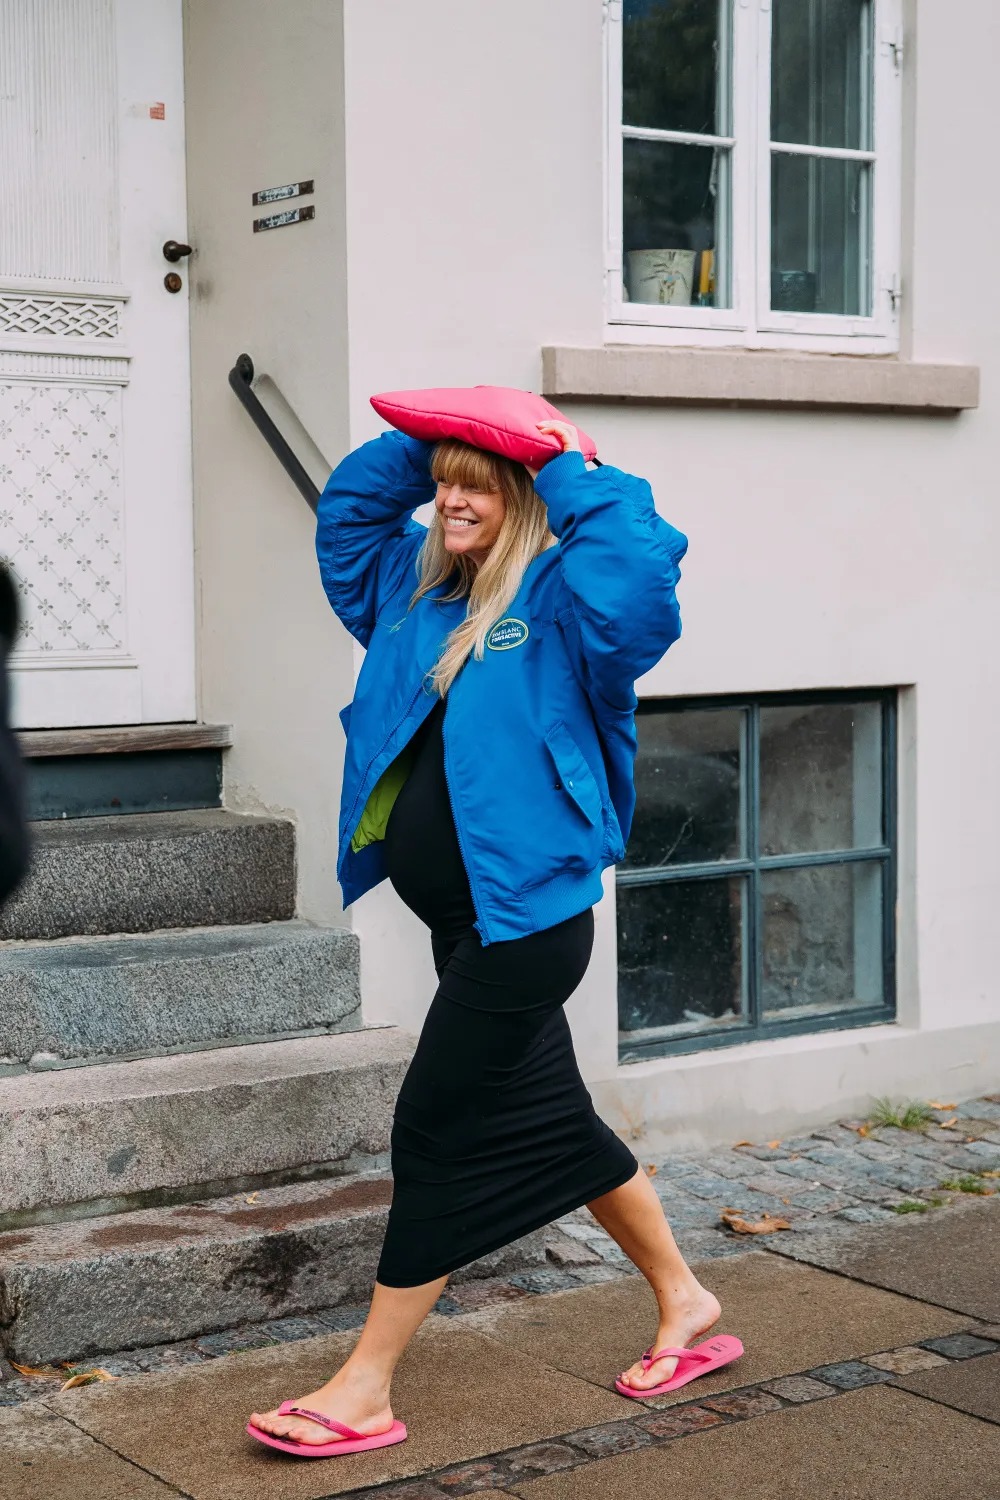 ao du Jeanette Friis Madsen Copenhagen - Điểm danh 5 thiết kế áo khoác mỏng nhẹ tạo nên cơn sốt mùa Hè